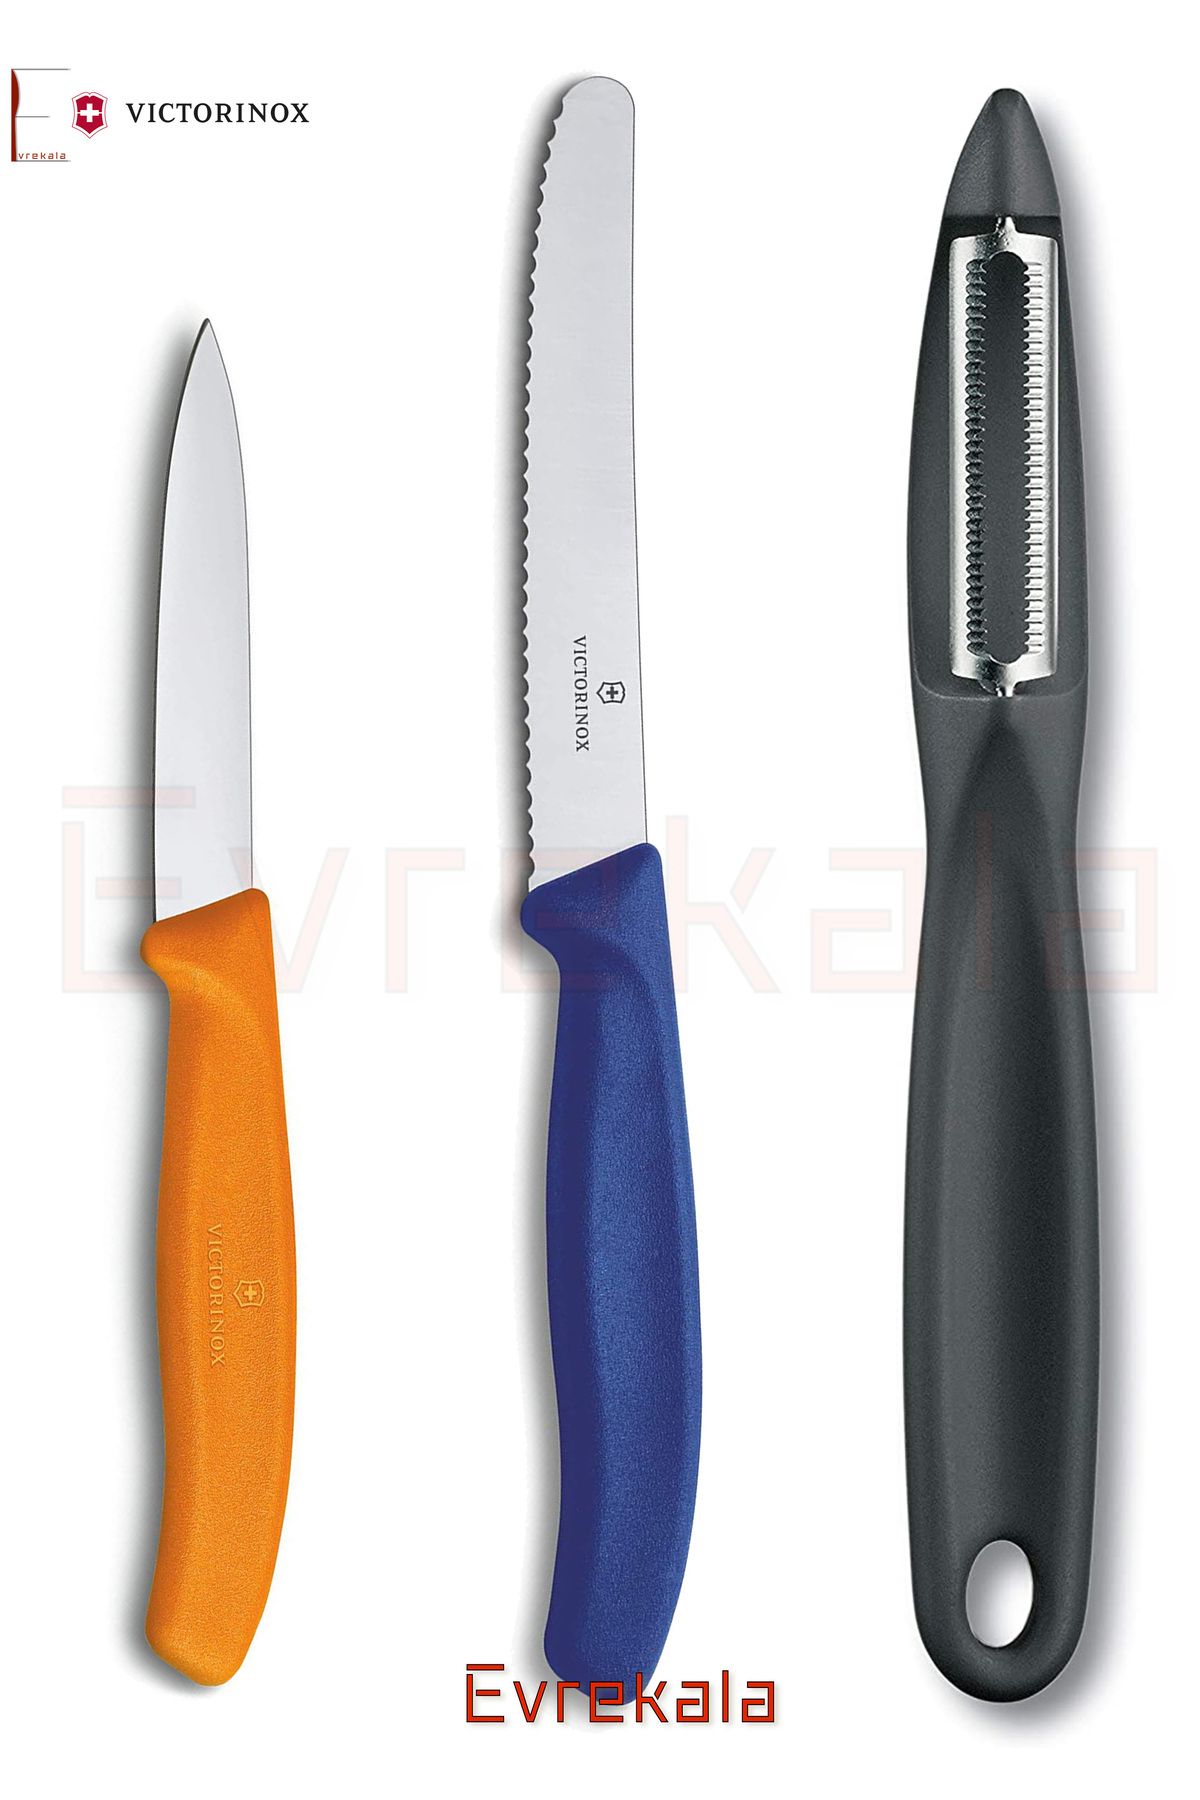 VICTORINOX 2 Bıçak 1 Soyacak Set Victorinox -Yetkili Satıcı Evrekala- 3 Knife and Peeler Set